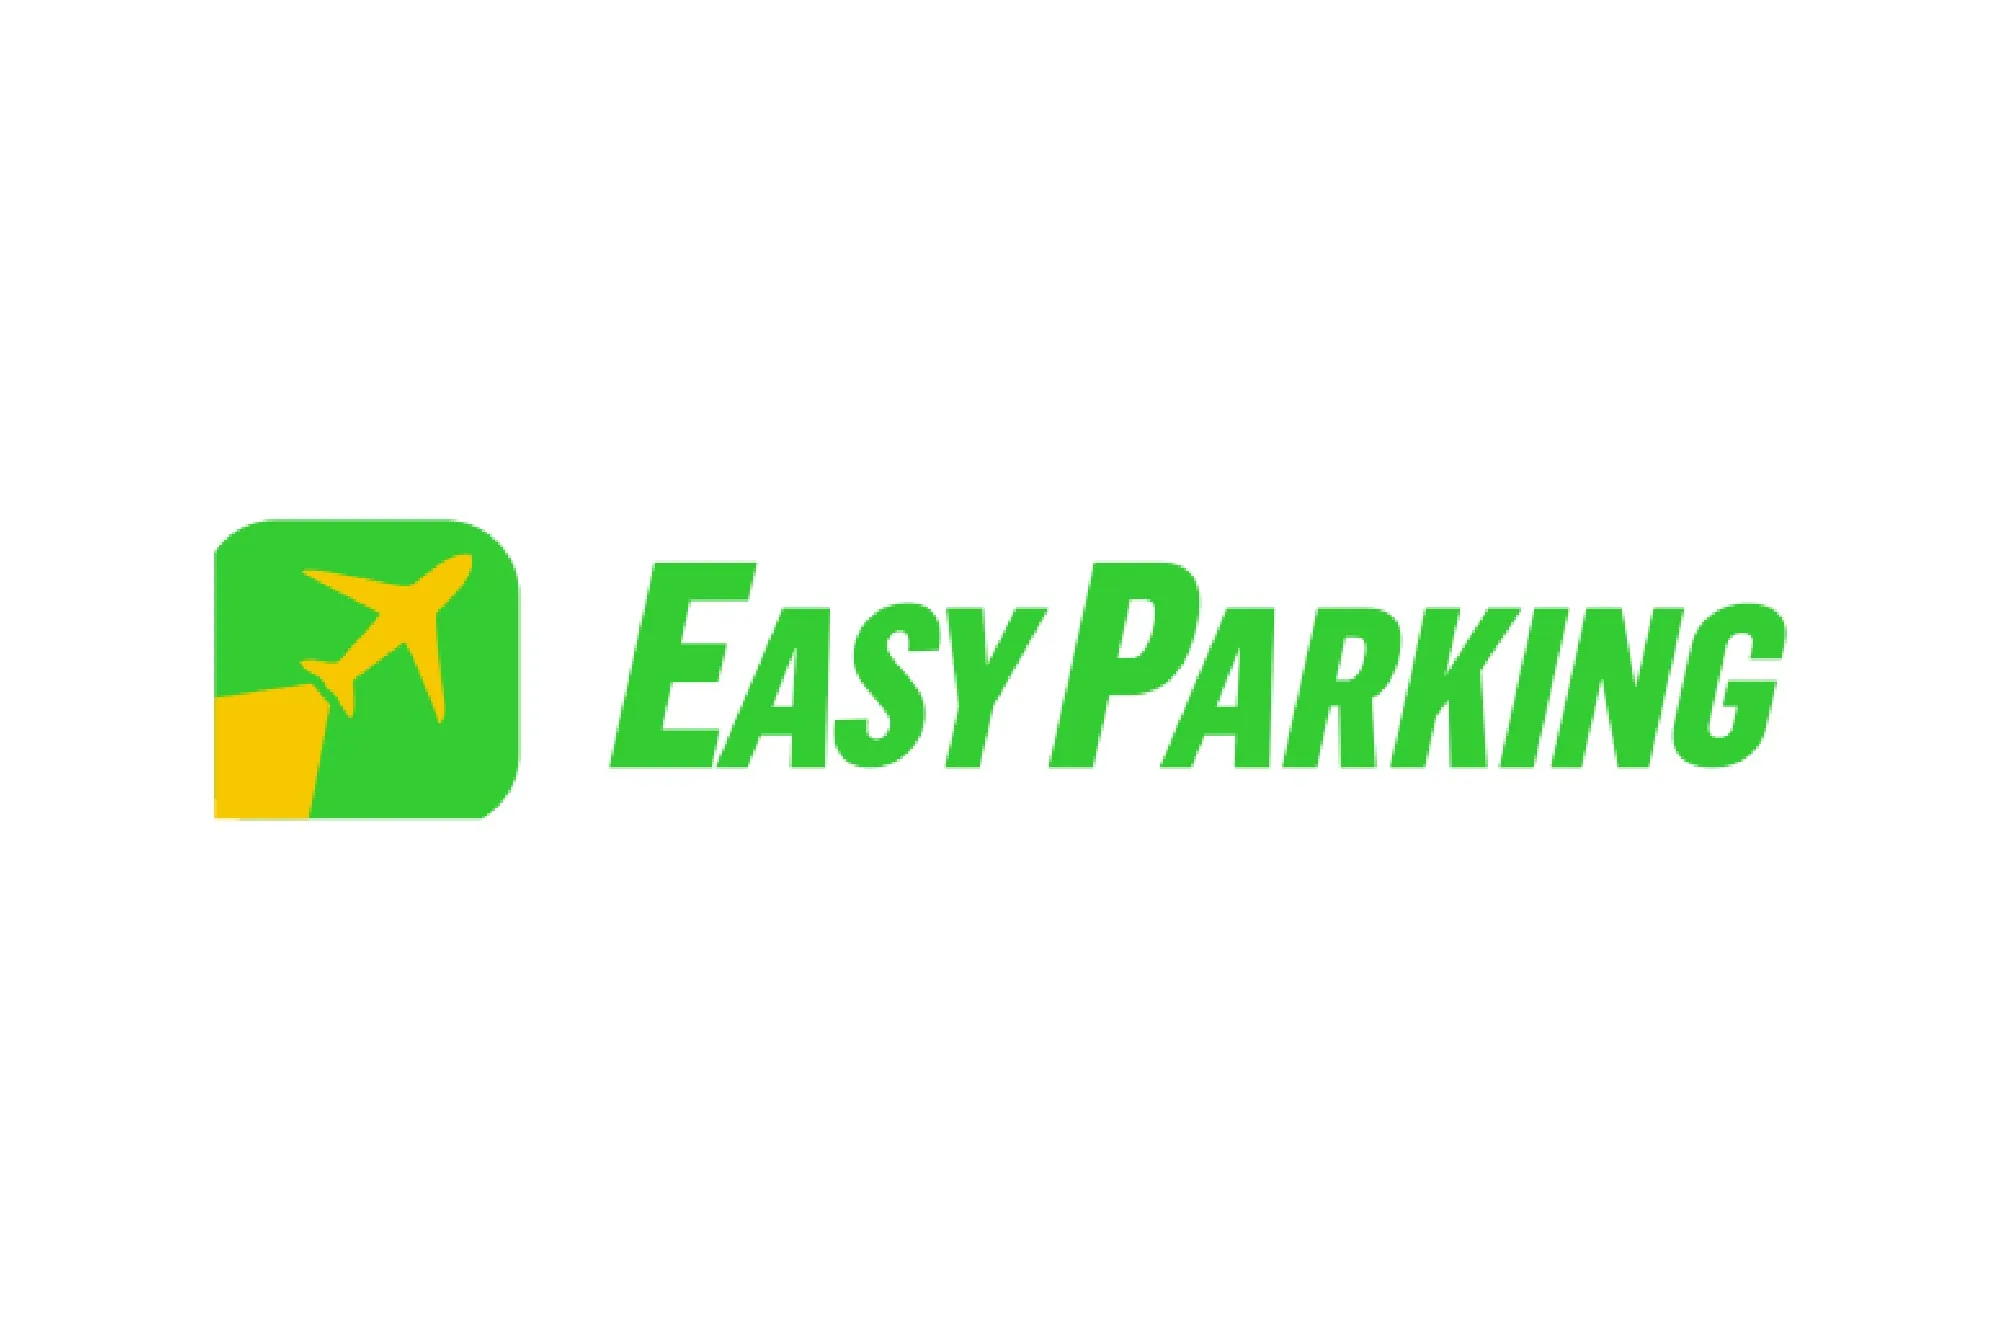 Easy Parking Caselle (Paga in parcheggio) - Parcheggio Aeroporto Torino - picture 1